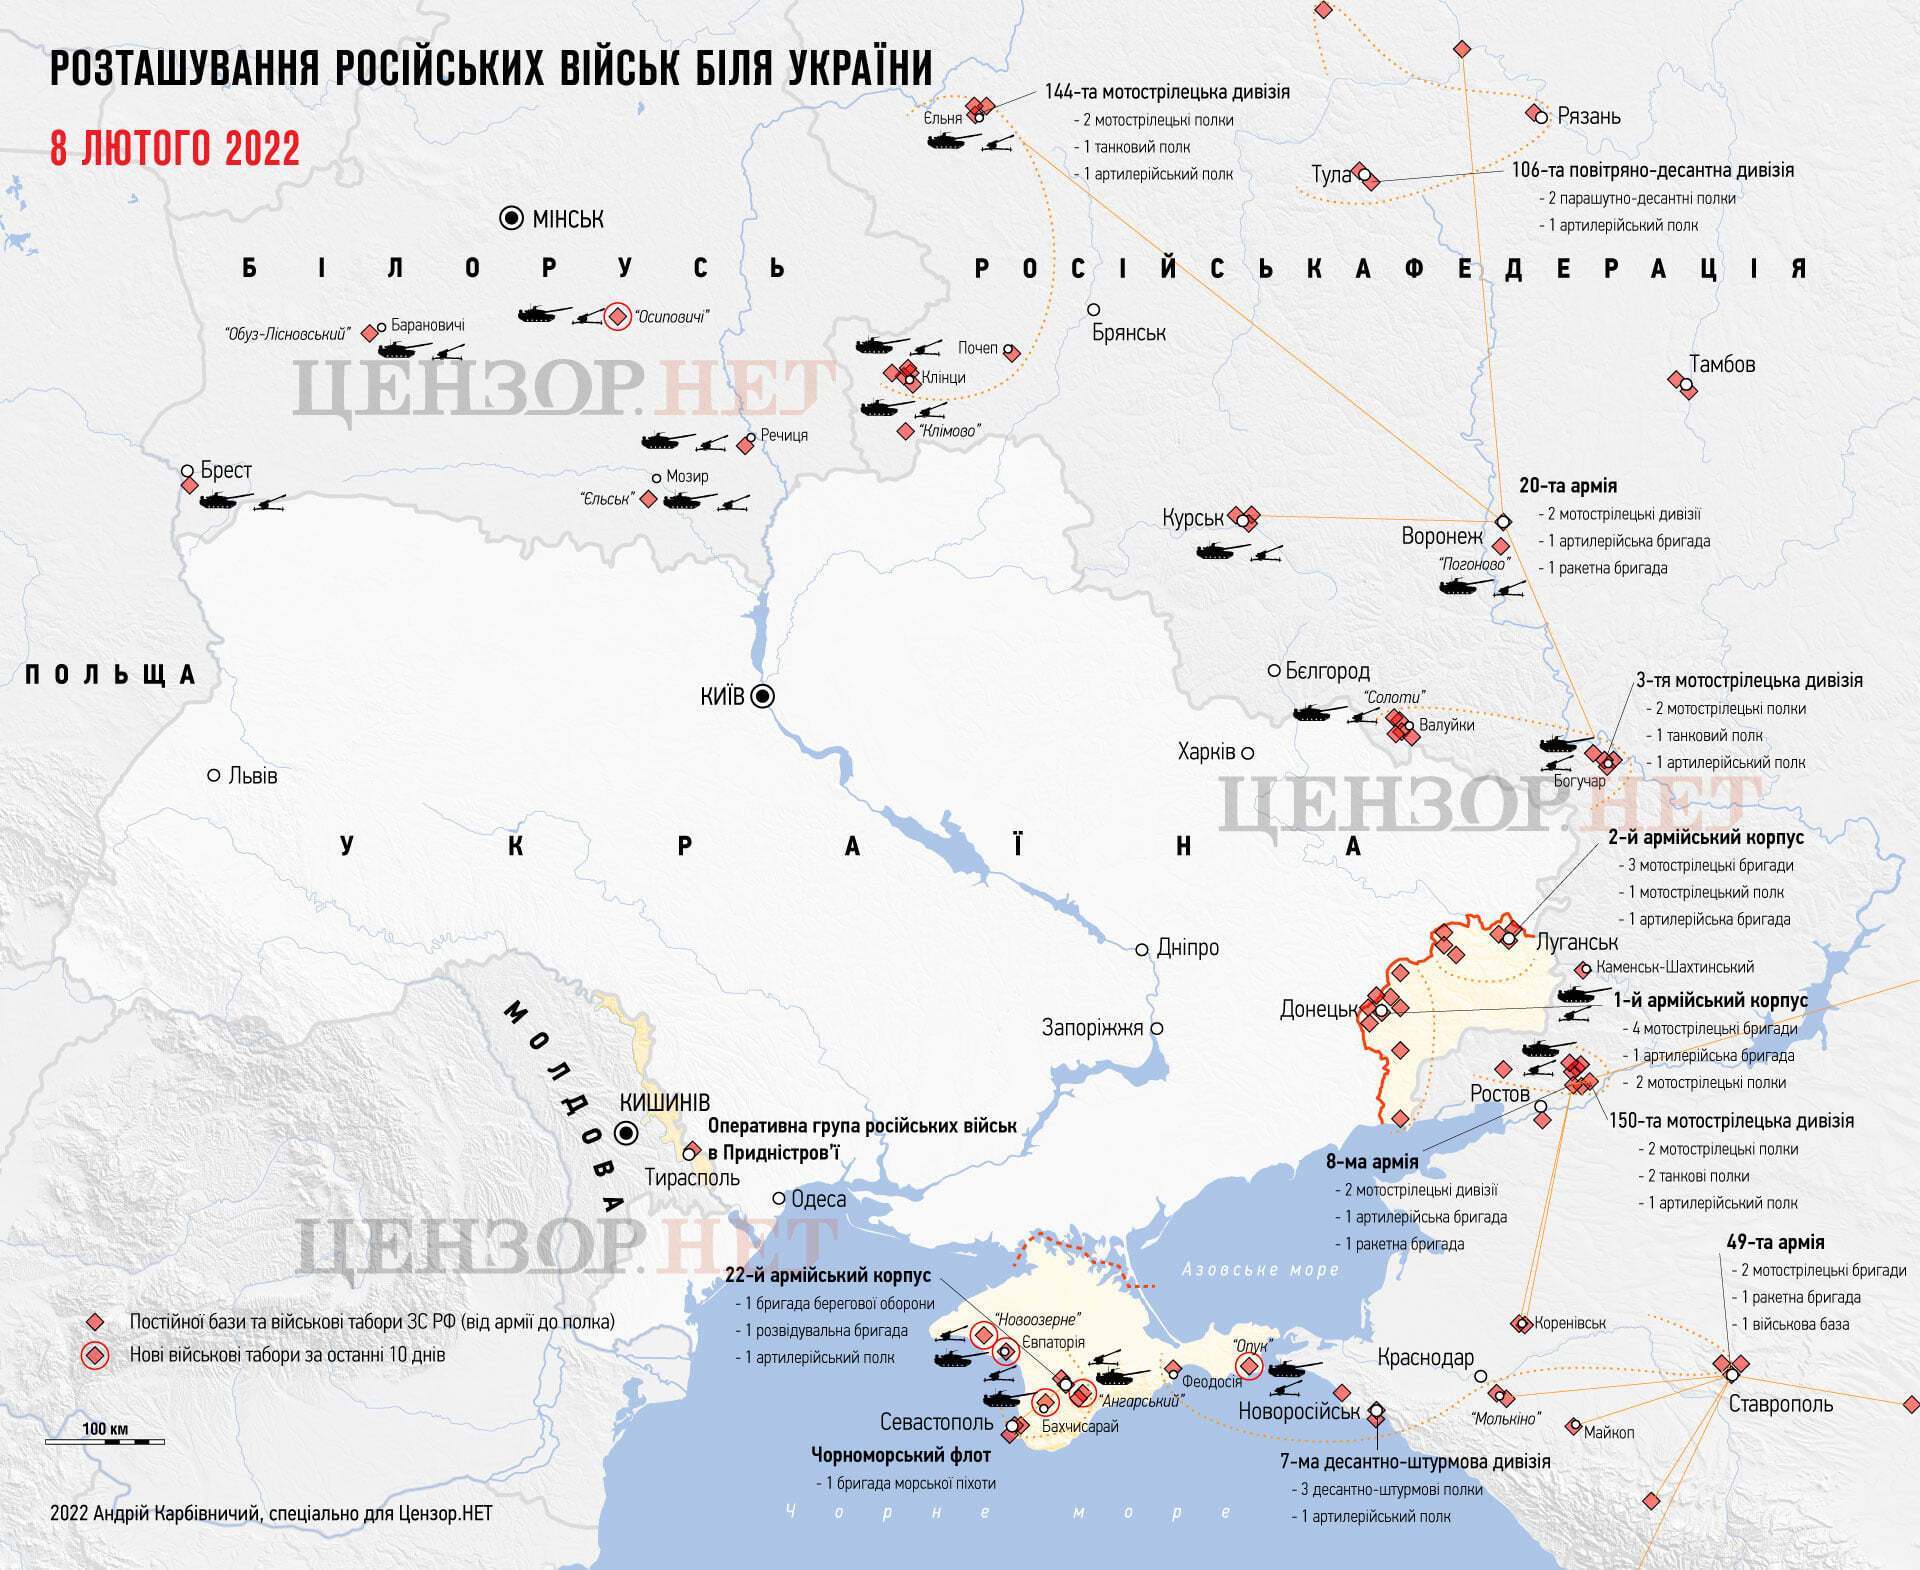 Розташування російських військ на території України на 8 лютого